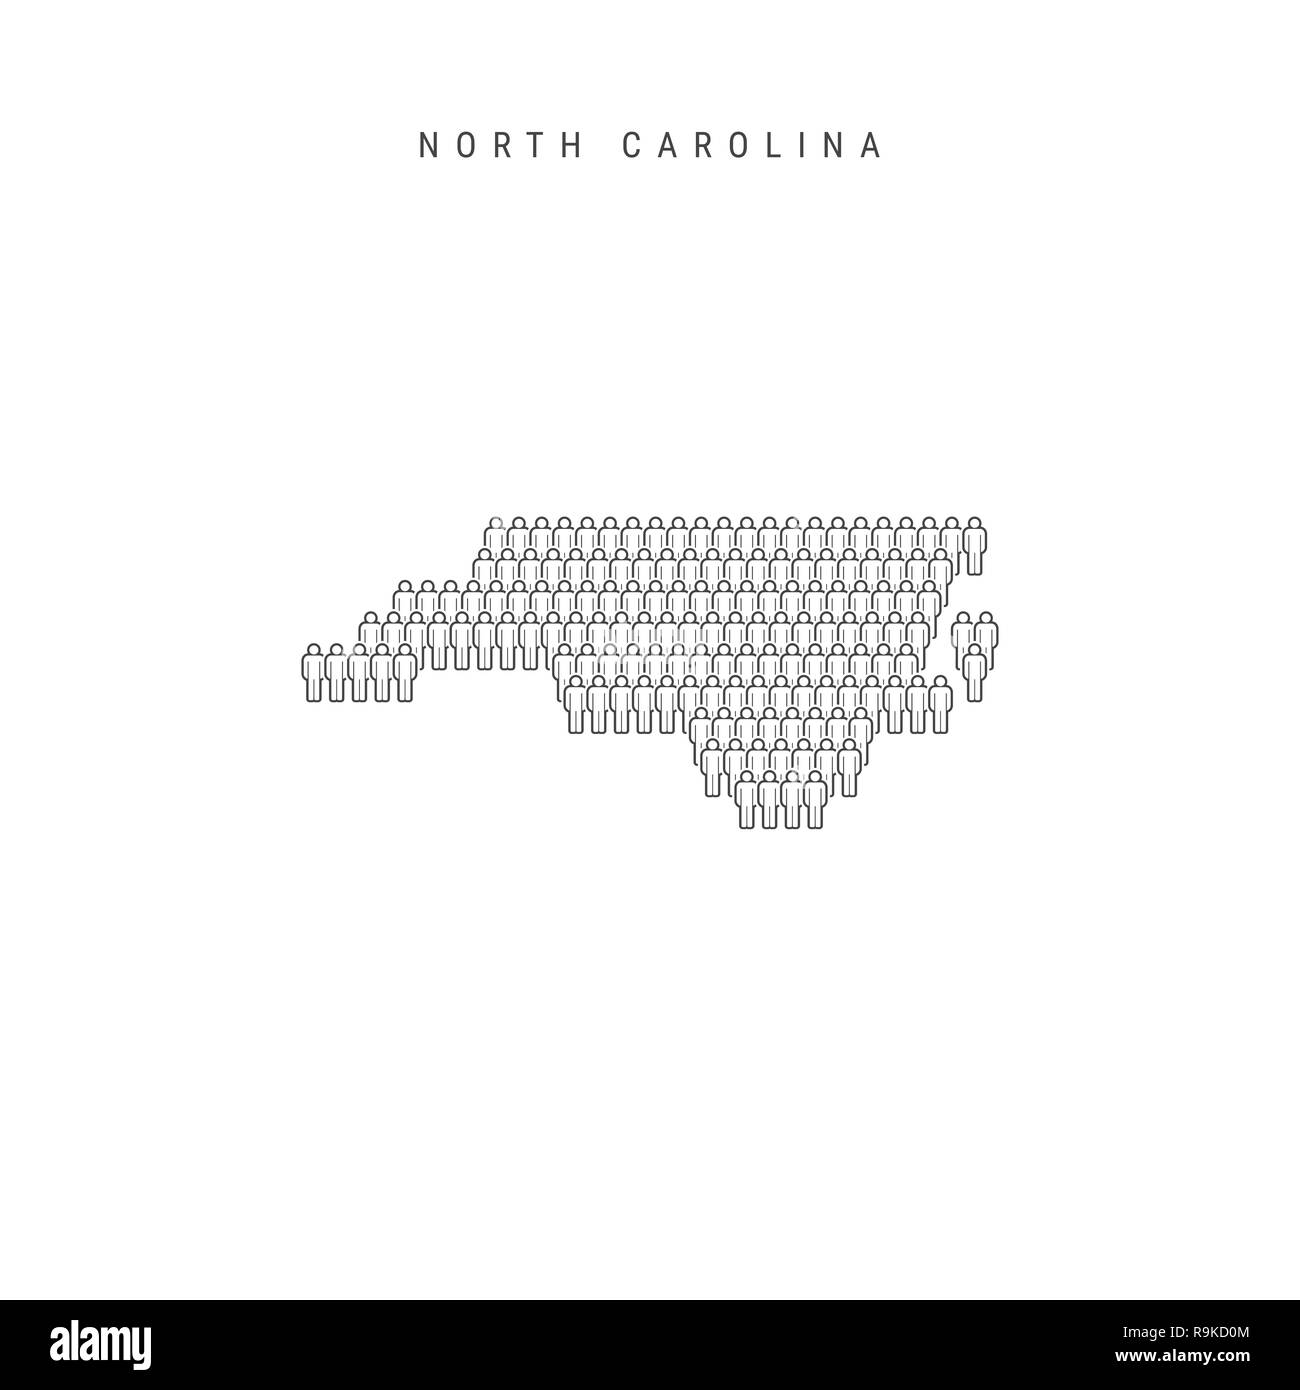 Leute Karte von North Carolina, USA. Stilisierte Silhouette, Leute in der Form einer Karte von North Carolina. North Carolina Bevölkerung. Illustra Stockfoto